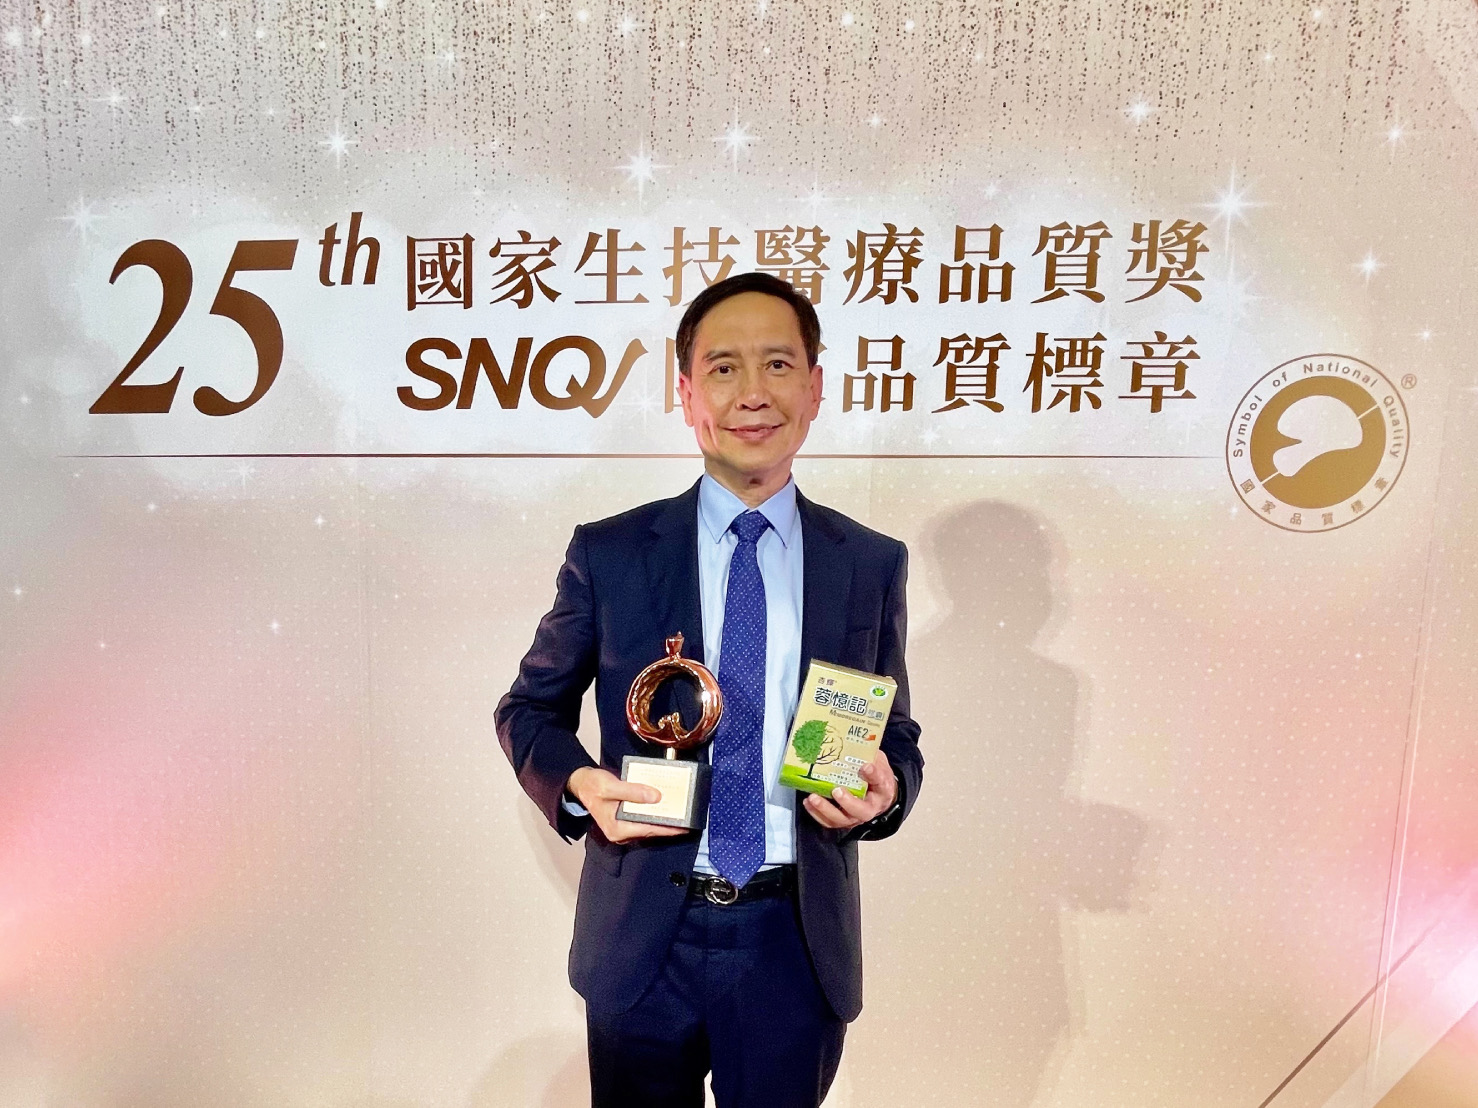 杏輝「蓉憶記®AIE2」為唯一同時榮獲第25屆國家生技醫療品質獎及SNQ國家品質標章雙重肯定之健康食品